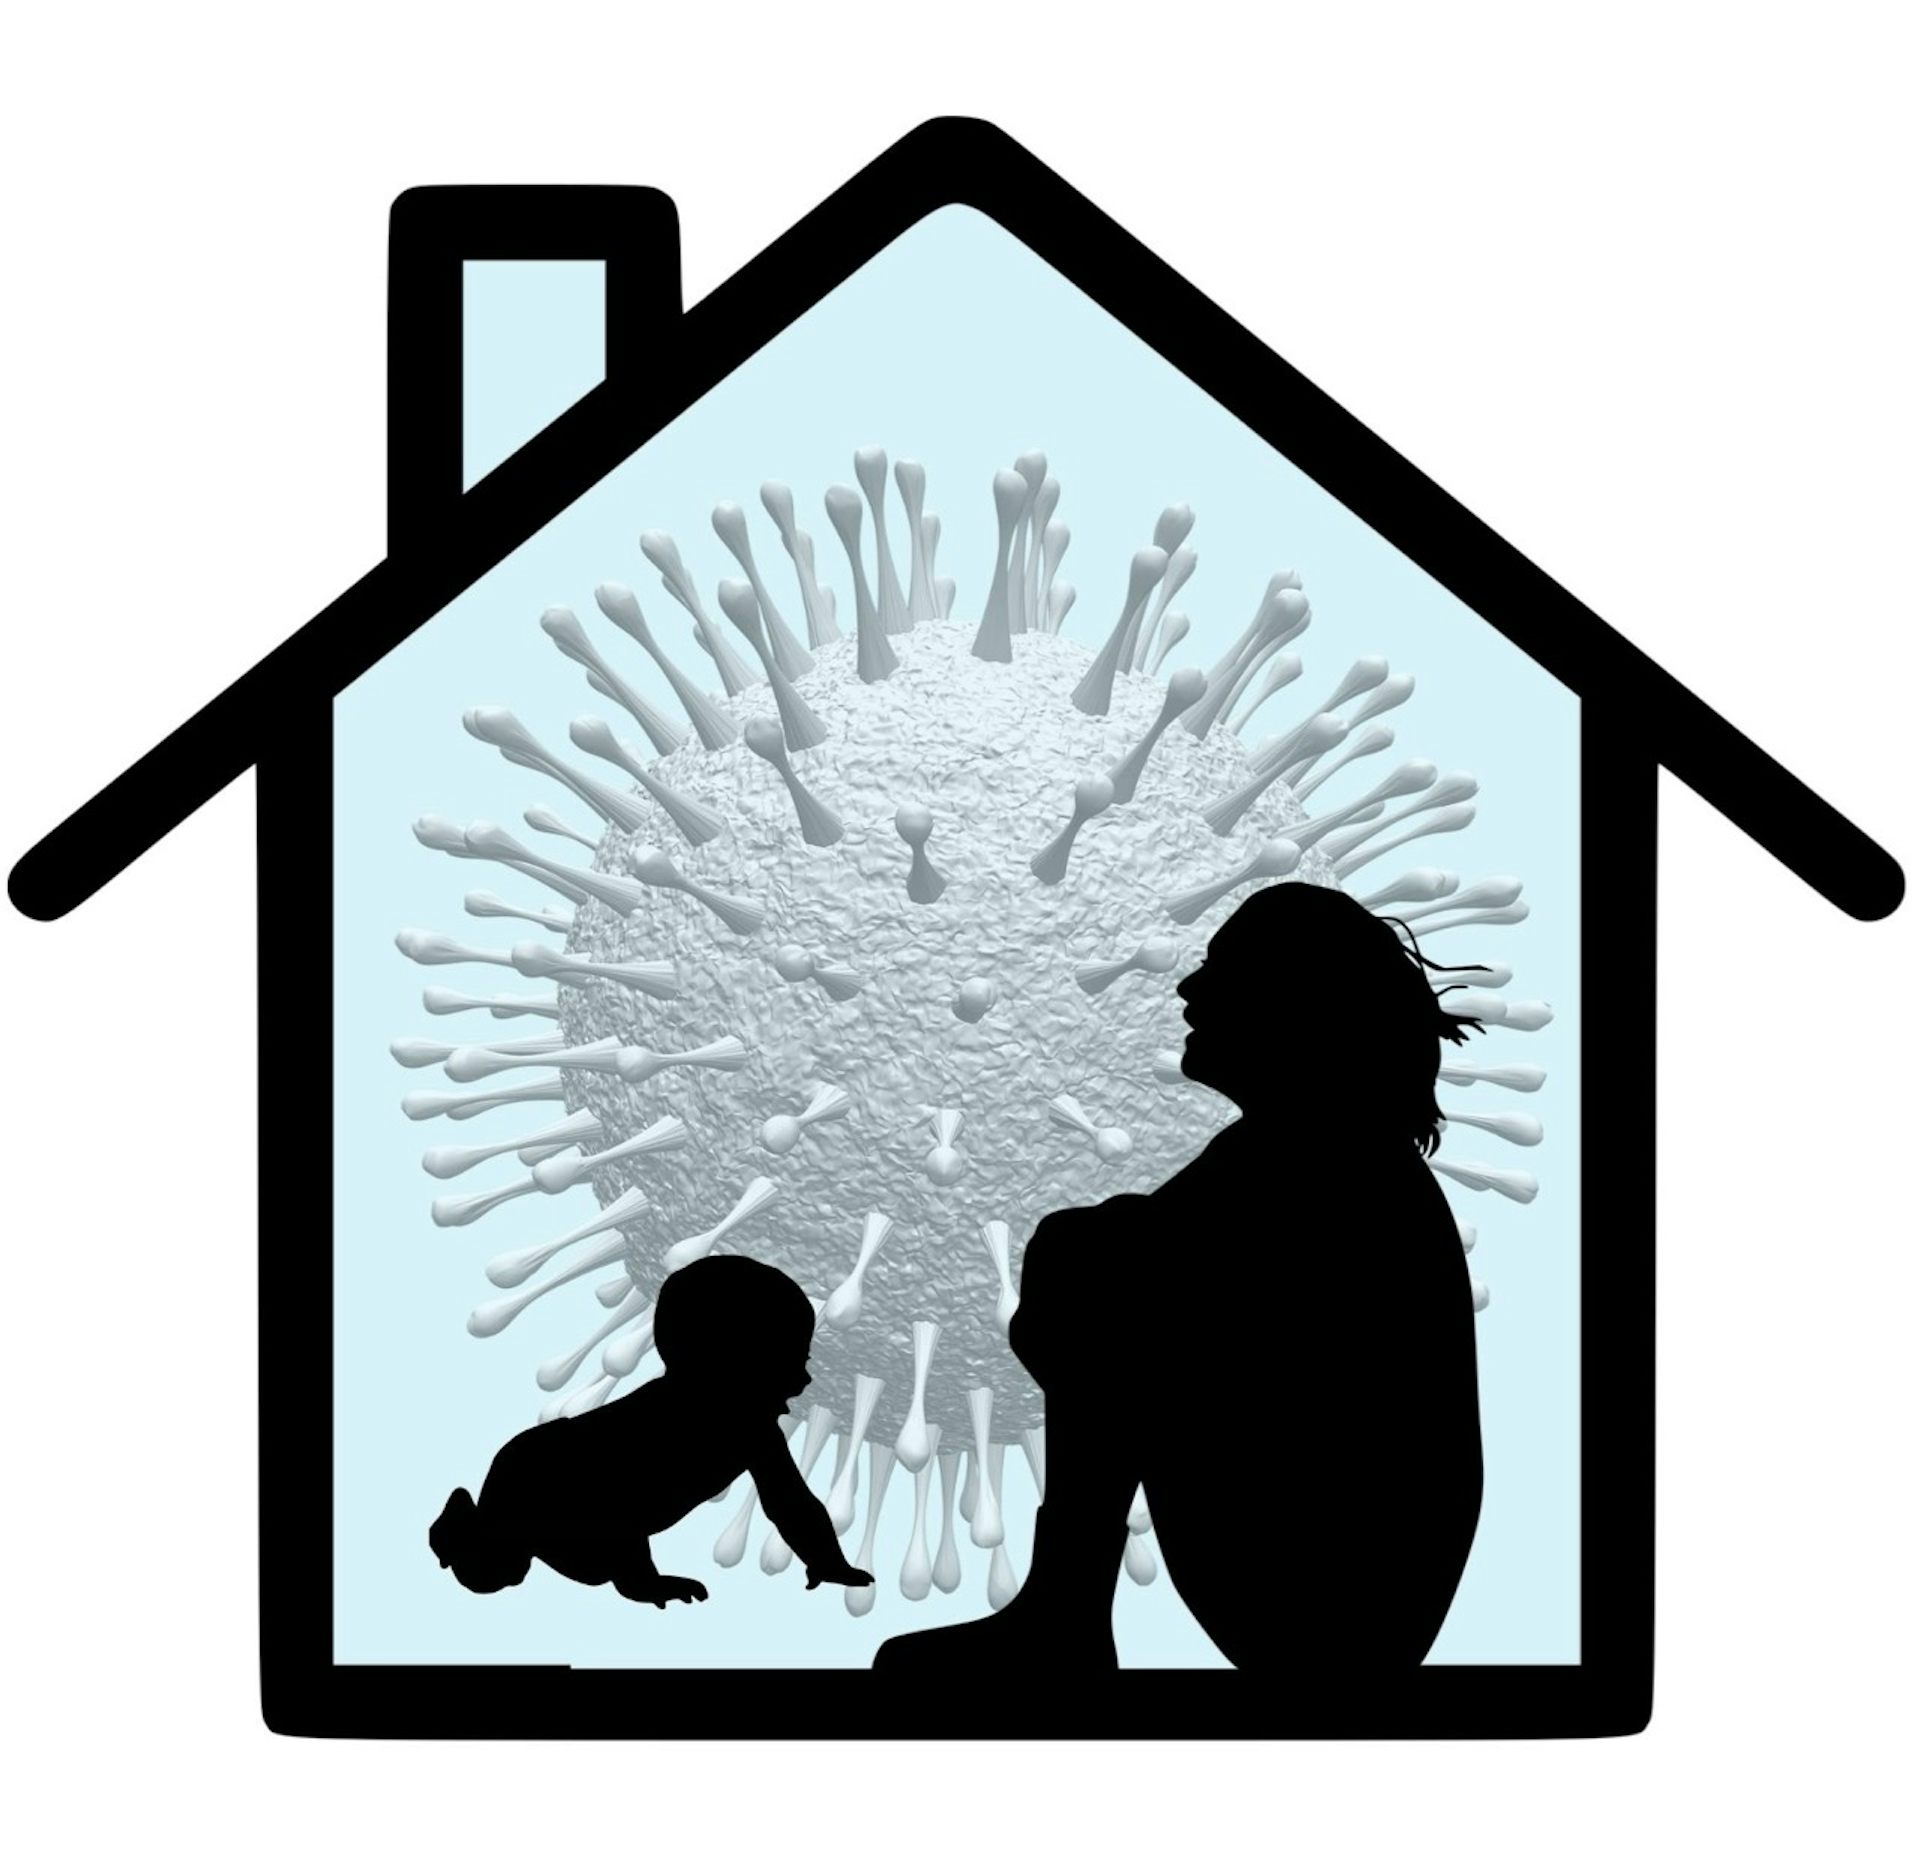 Silhouetten einer sitzenden Frau, die ihre Knie umarmt, und eines krabbelnden Babys vor dem Umriss eines Hauses und einem Bild eines Coronavirus